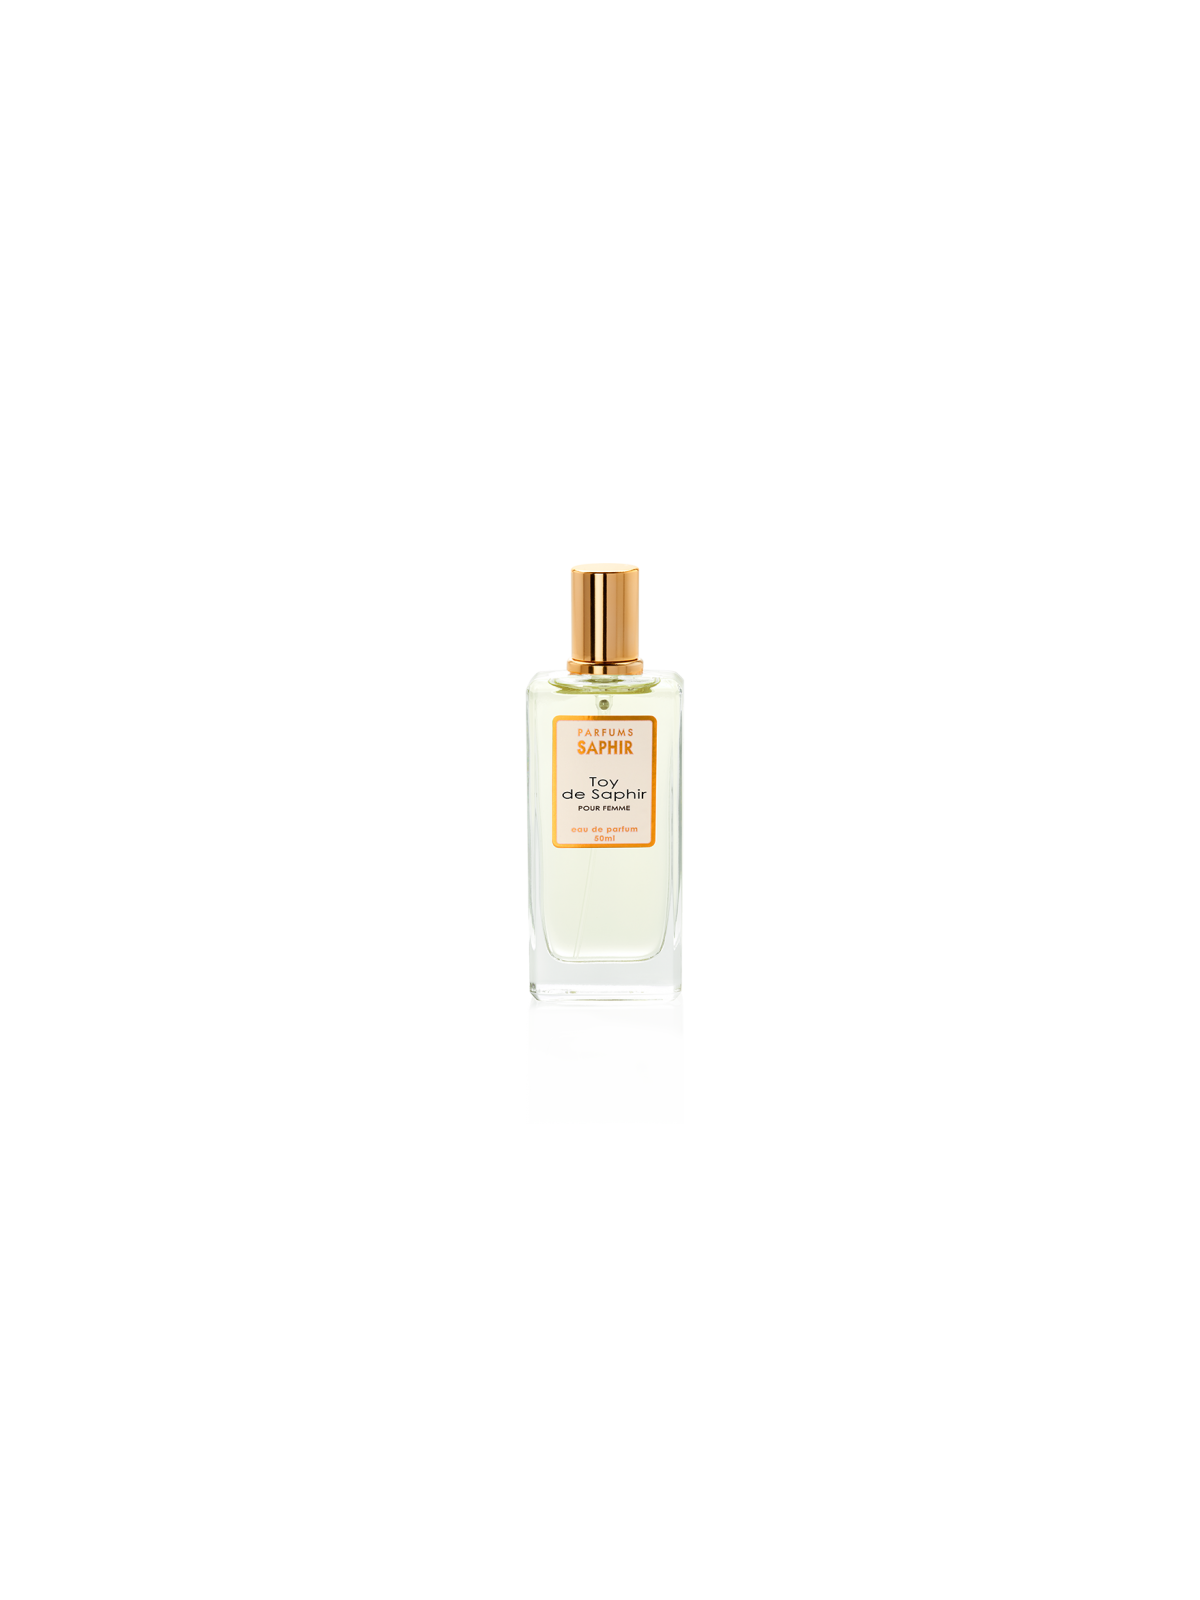 Comprar Perfume SAPHIR Toy de Saphir 50ml. en Perfumes para mujer por sólo 4,95 € o un precio específico de 4,95 € en Thalie Care